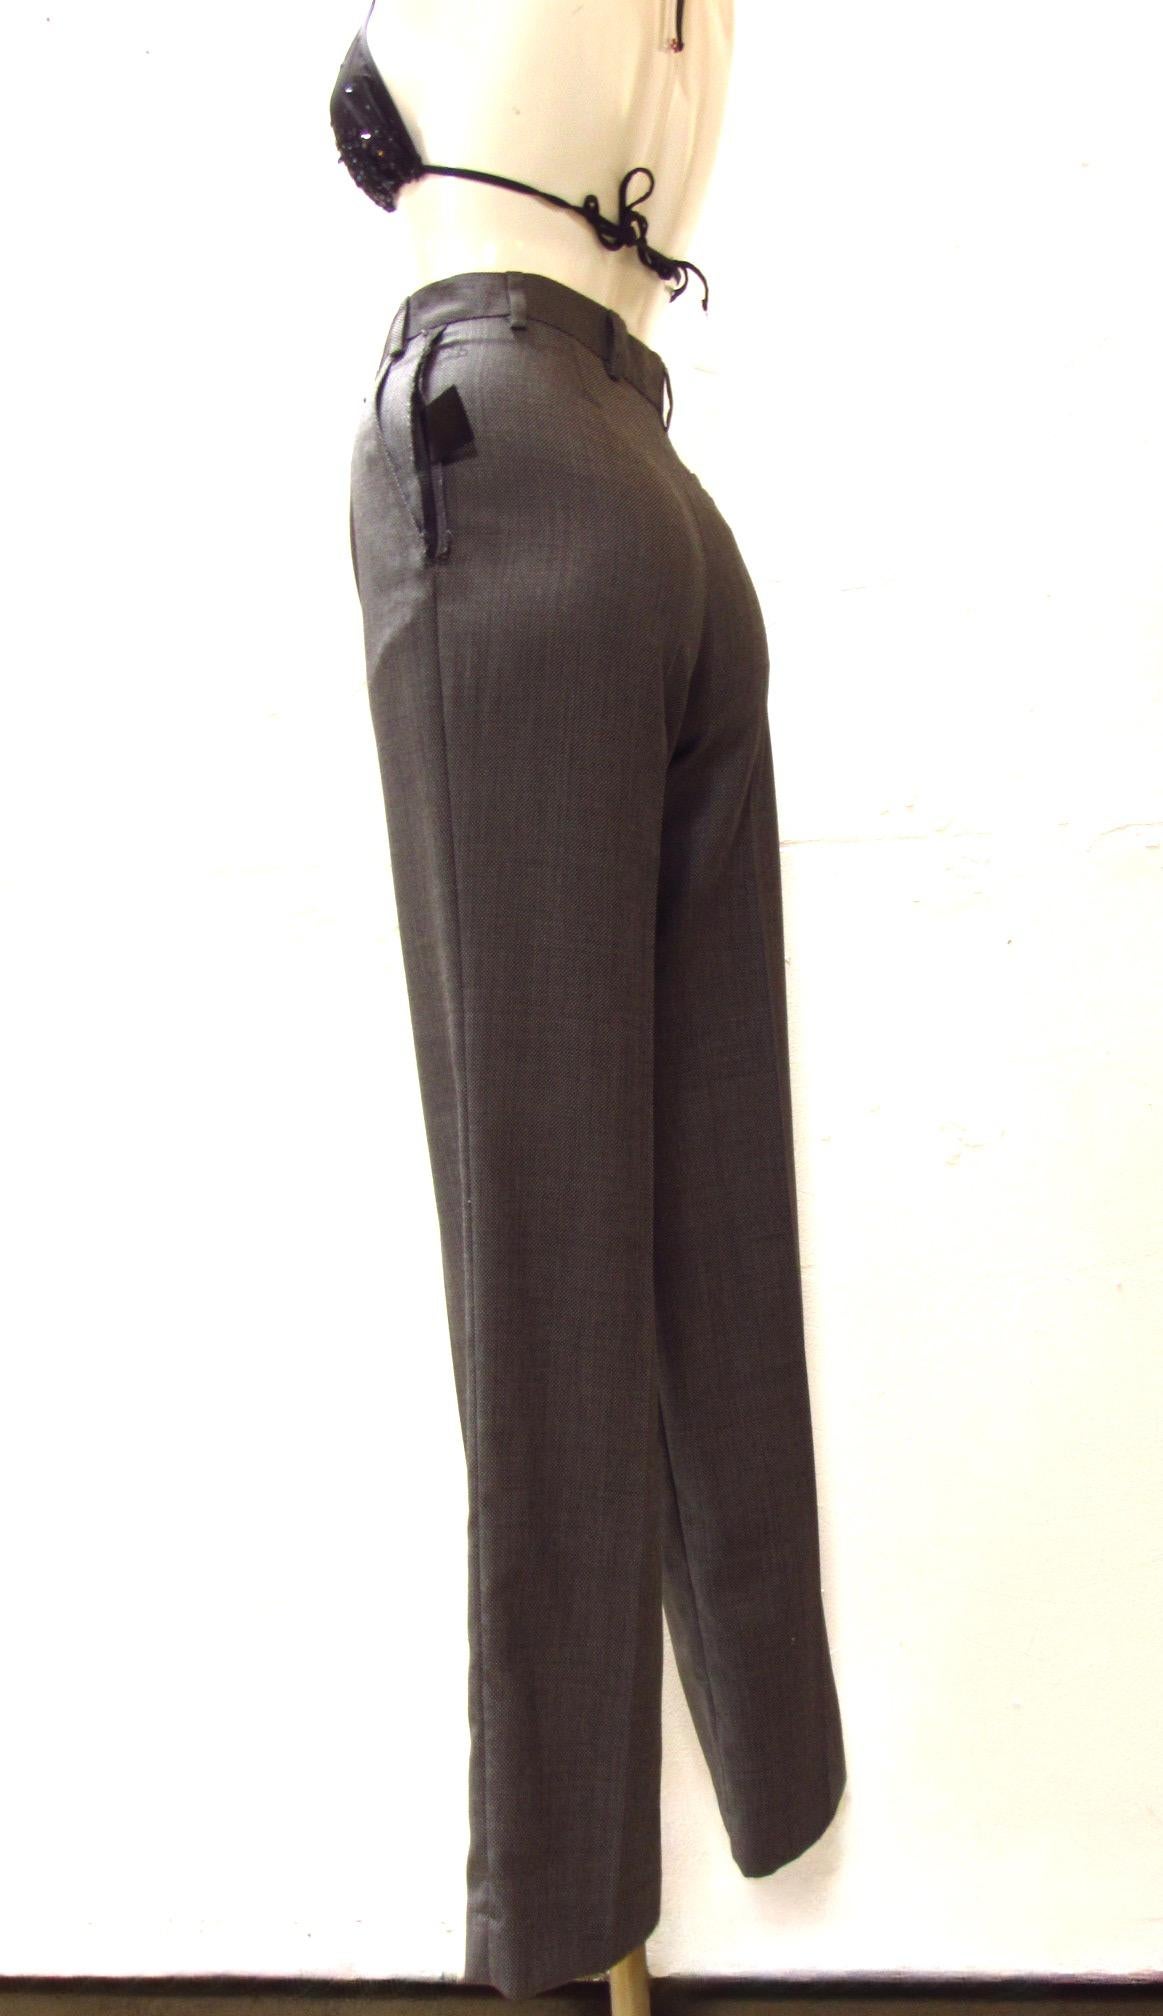 Aus dem Vintage-Label Maison Martin Margiela stammt diese Hose mit geradem Bein in schlichtem Grau. Die rohen, freiliegenden Nähte an der Hüfte machen diese klassische Hose zu einem trendigen Accessoire. Die Hose hat zwei Taschen auf der Vorderseite